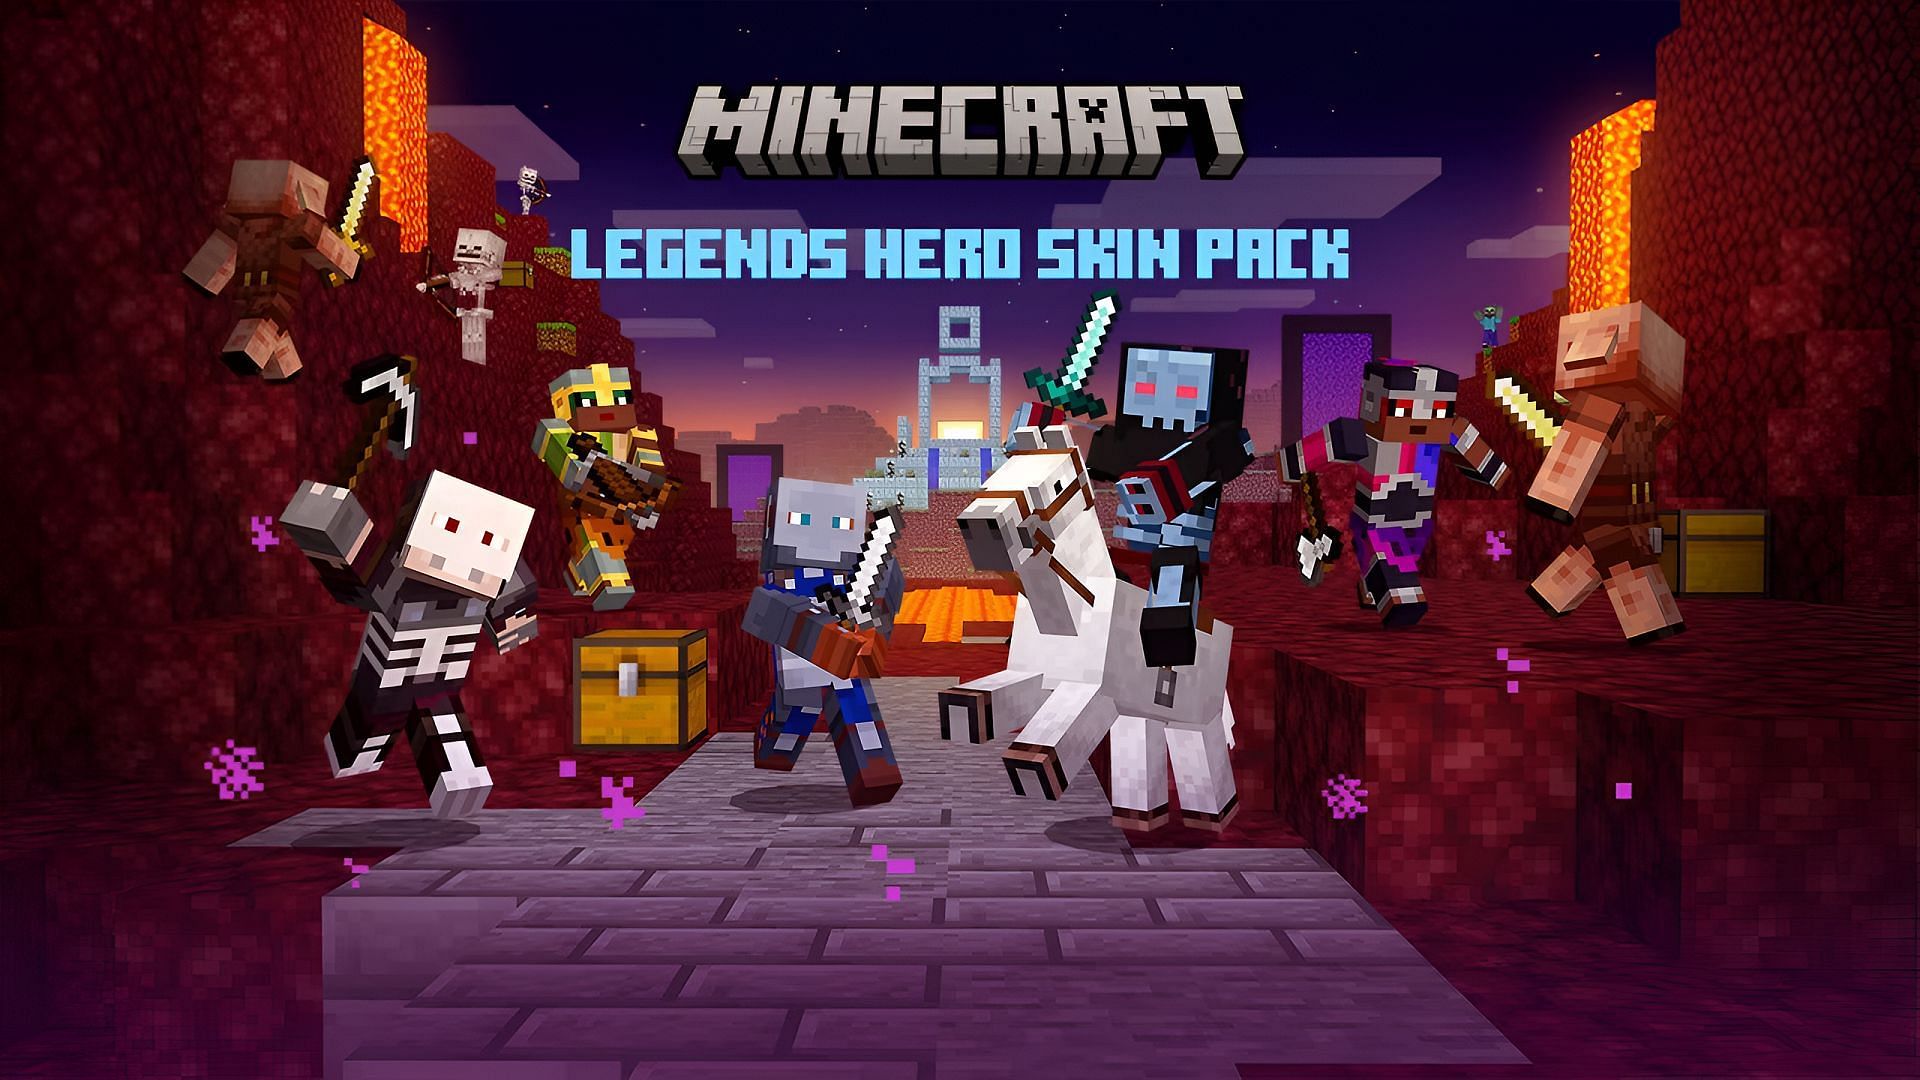 Legends skins debut in a new Bedrock Edition skin pack (Image via Mojang)